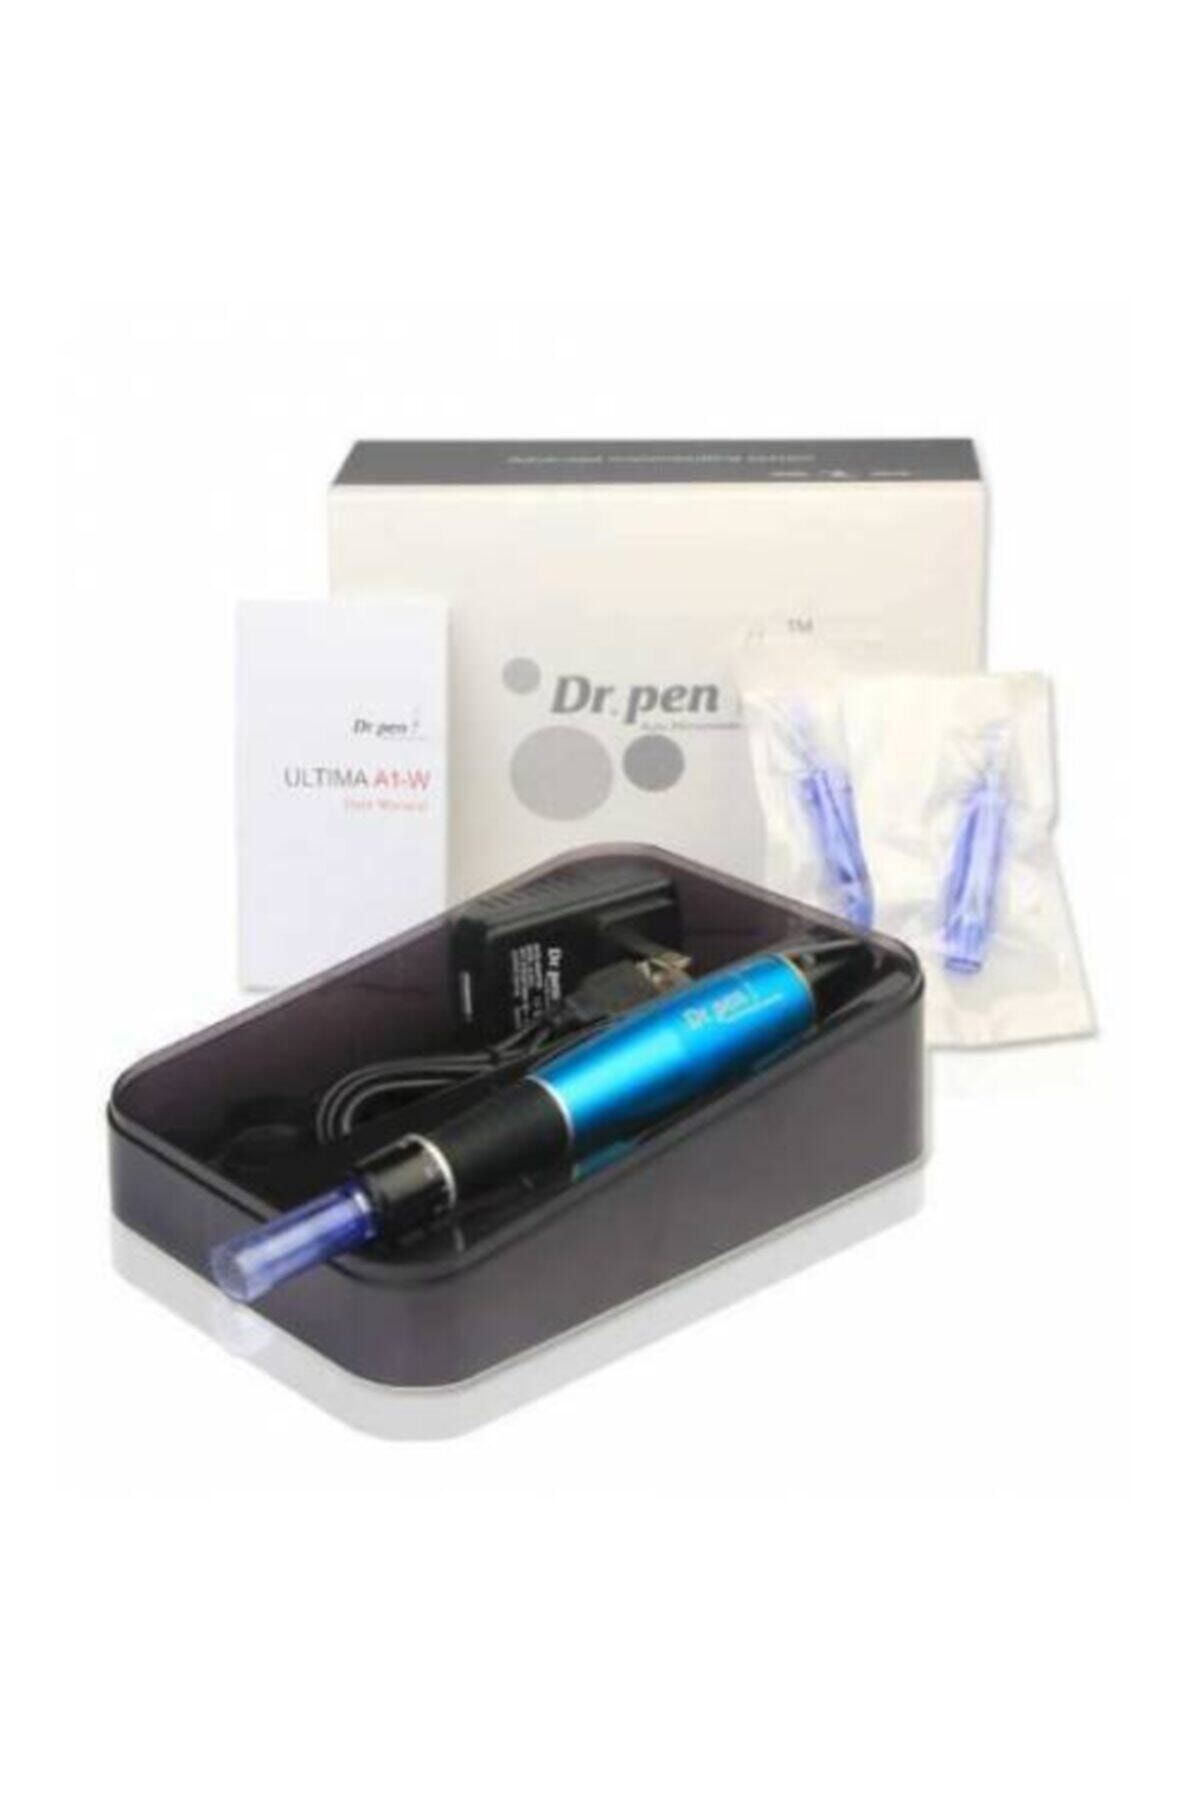 Dr.Pen Dr. Pen A1-w Cilt Yenileme Micro Iğneleme Sistemleri Dermapen Ve Kalıcı Makyaj Cihazı